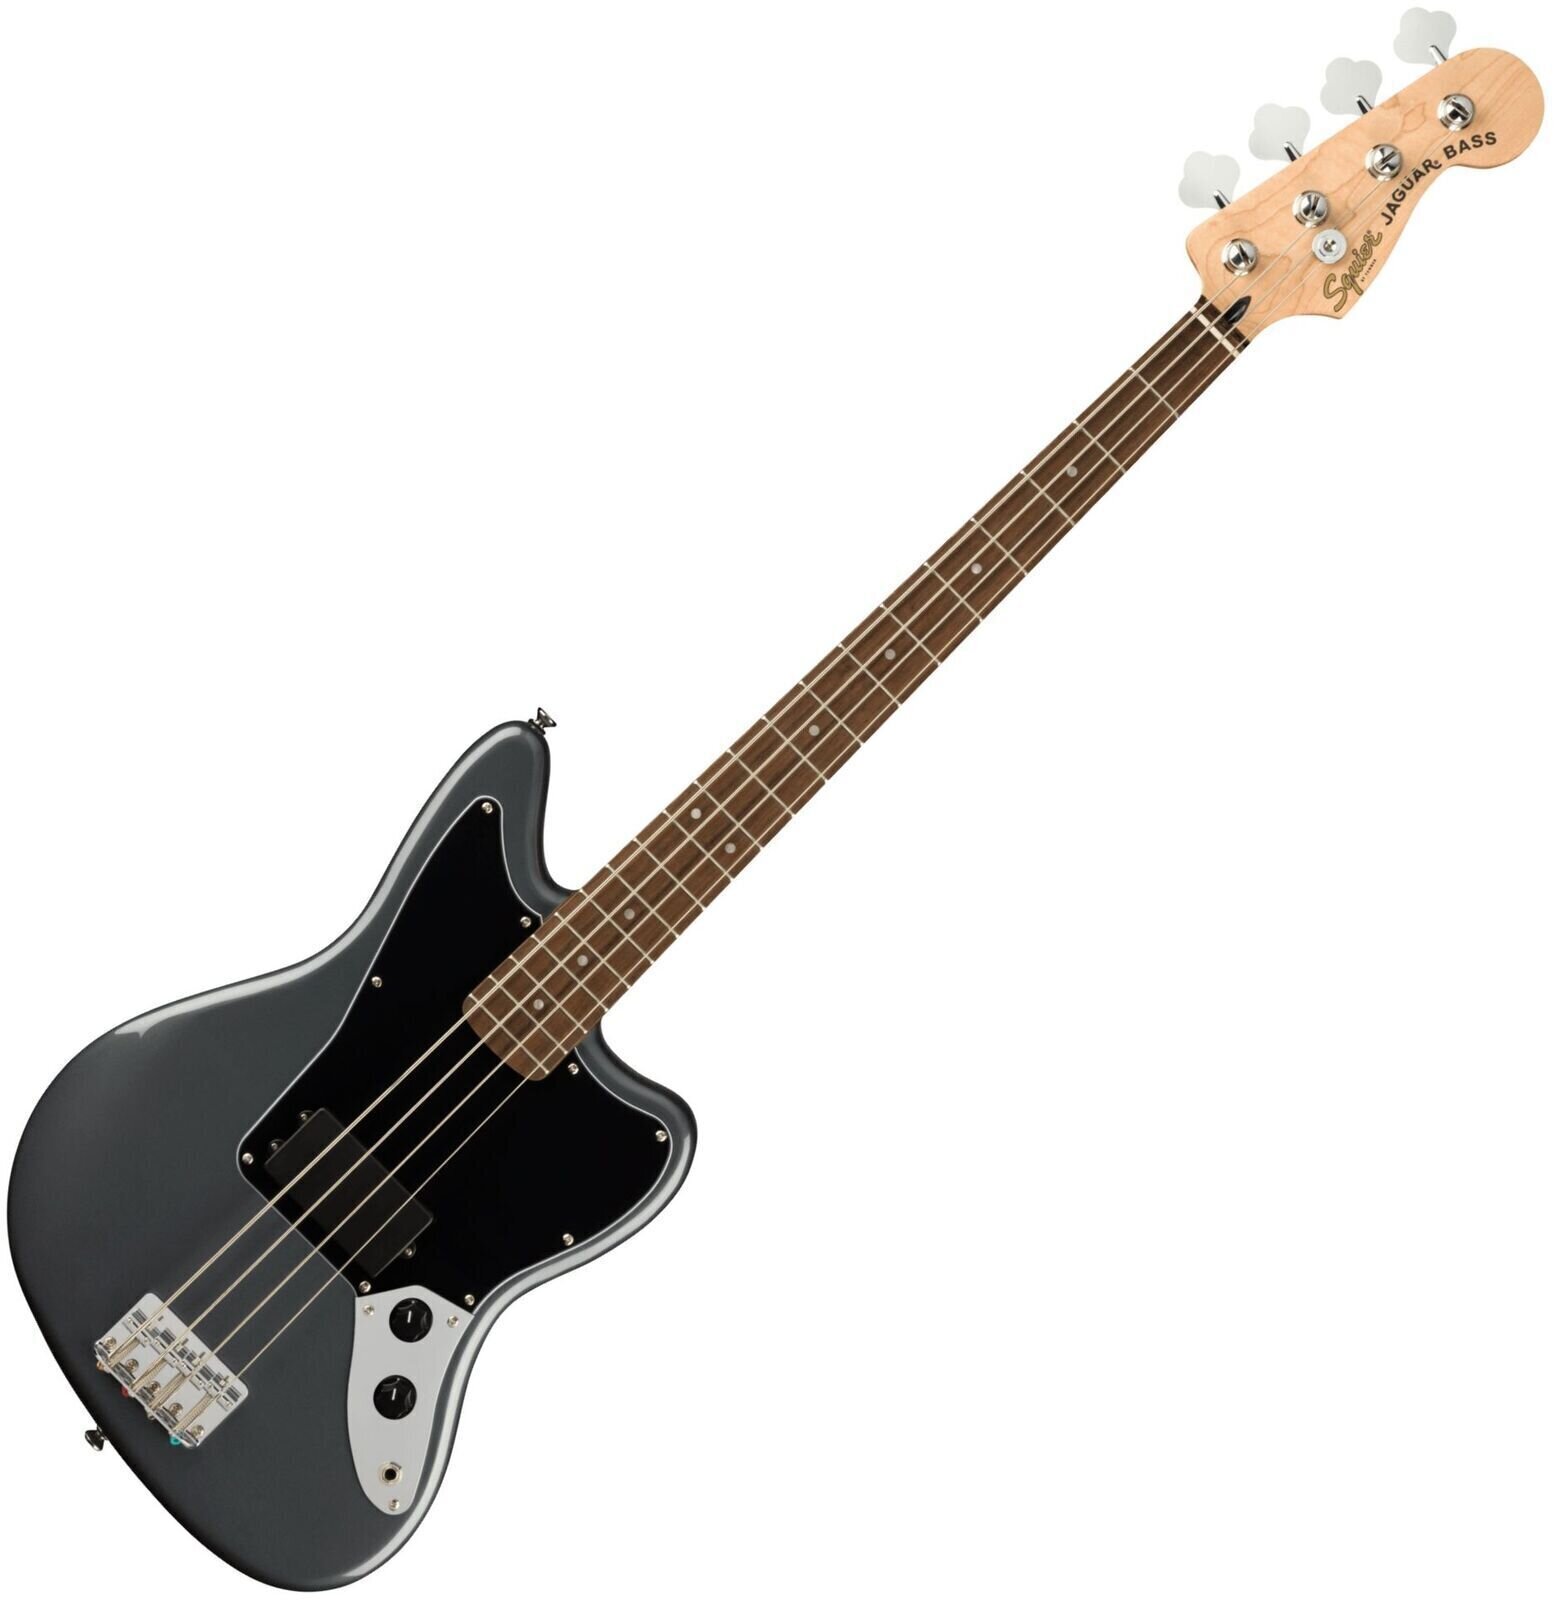 Fender Squier Affinity Series Jaguar Bass Charcoal Frost Metallic Fender Squier